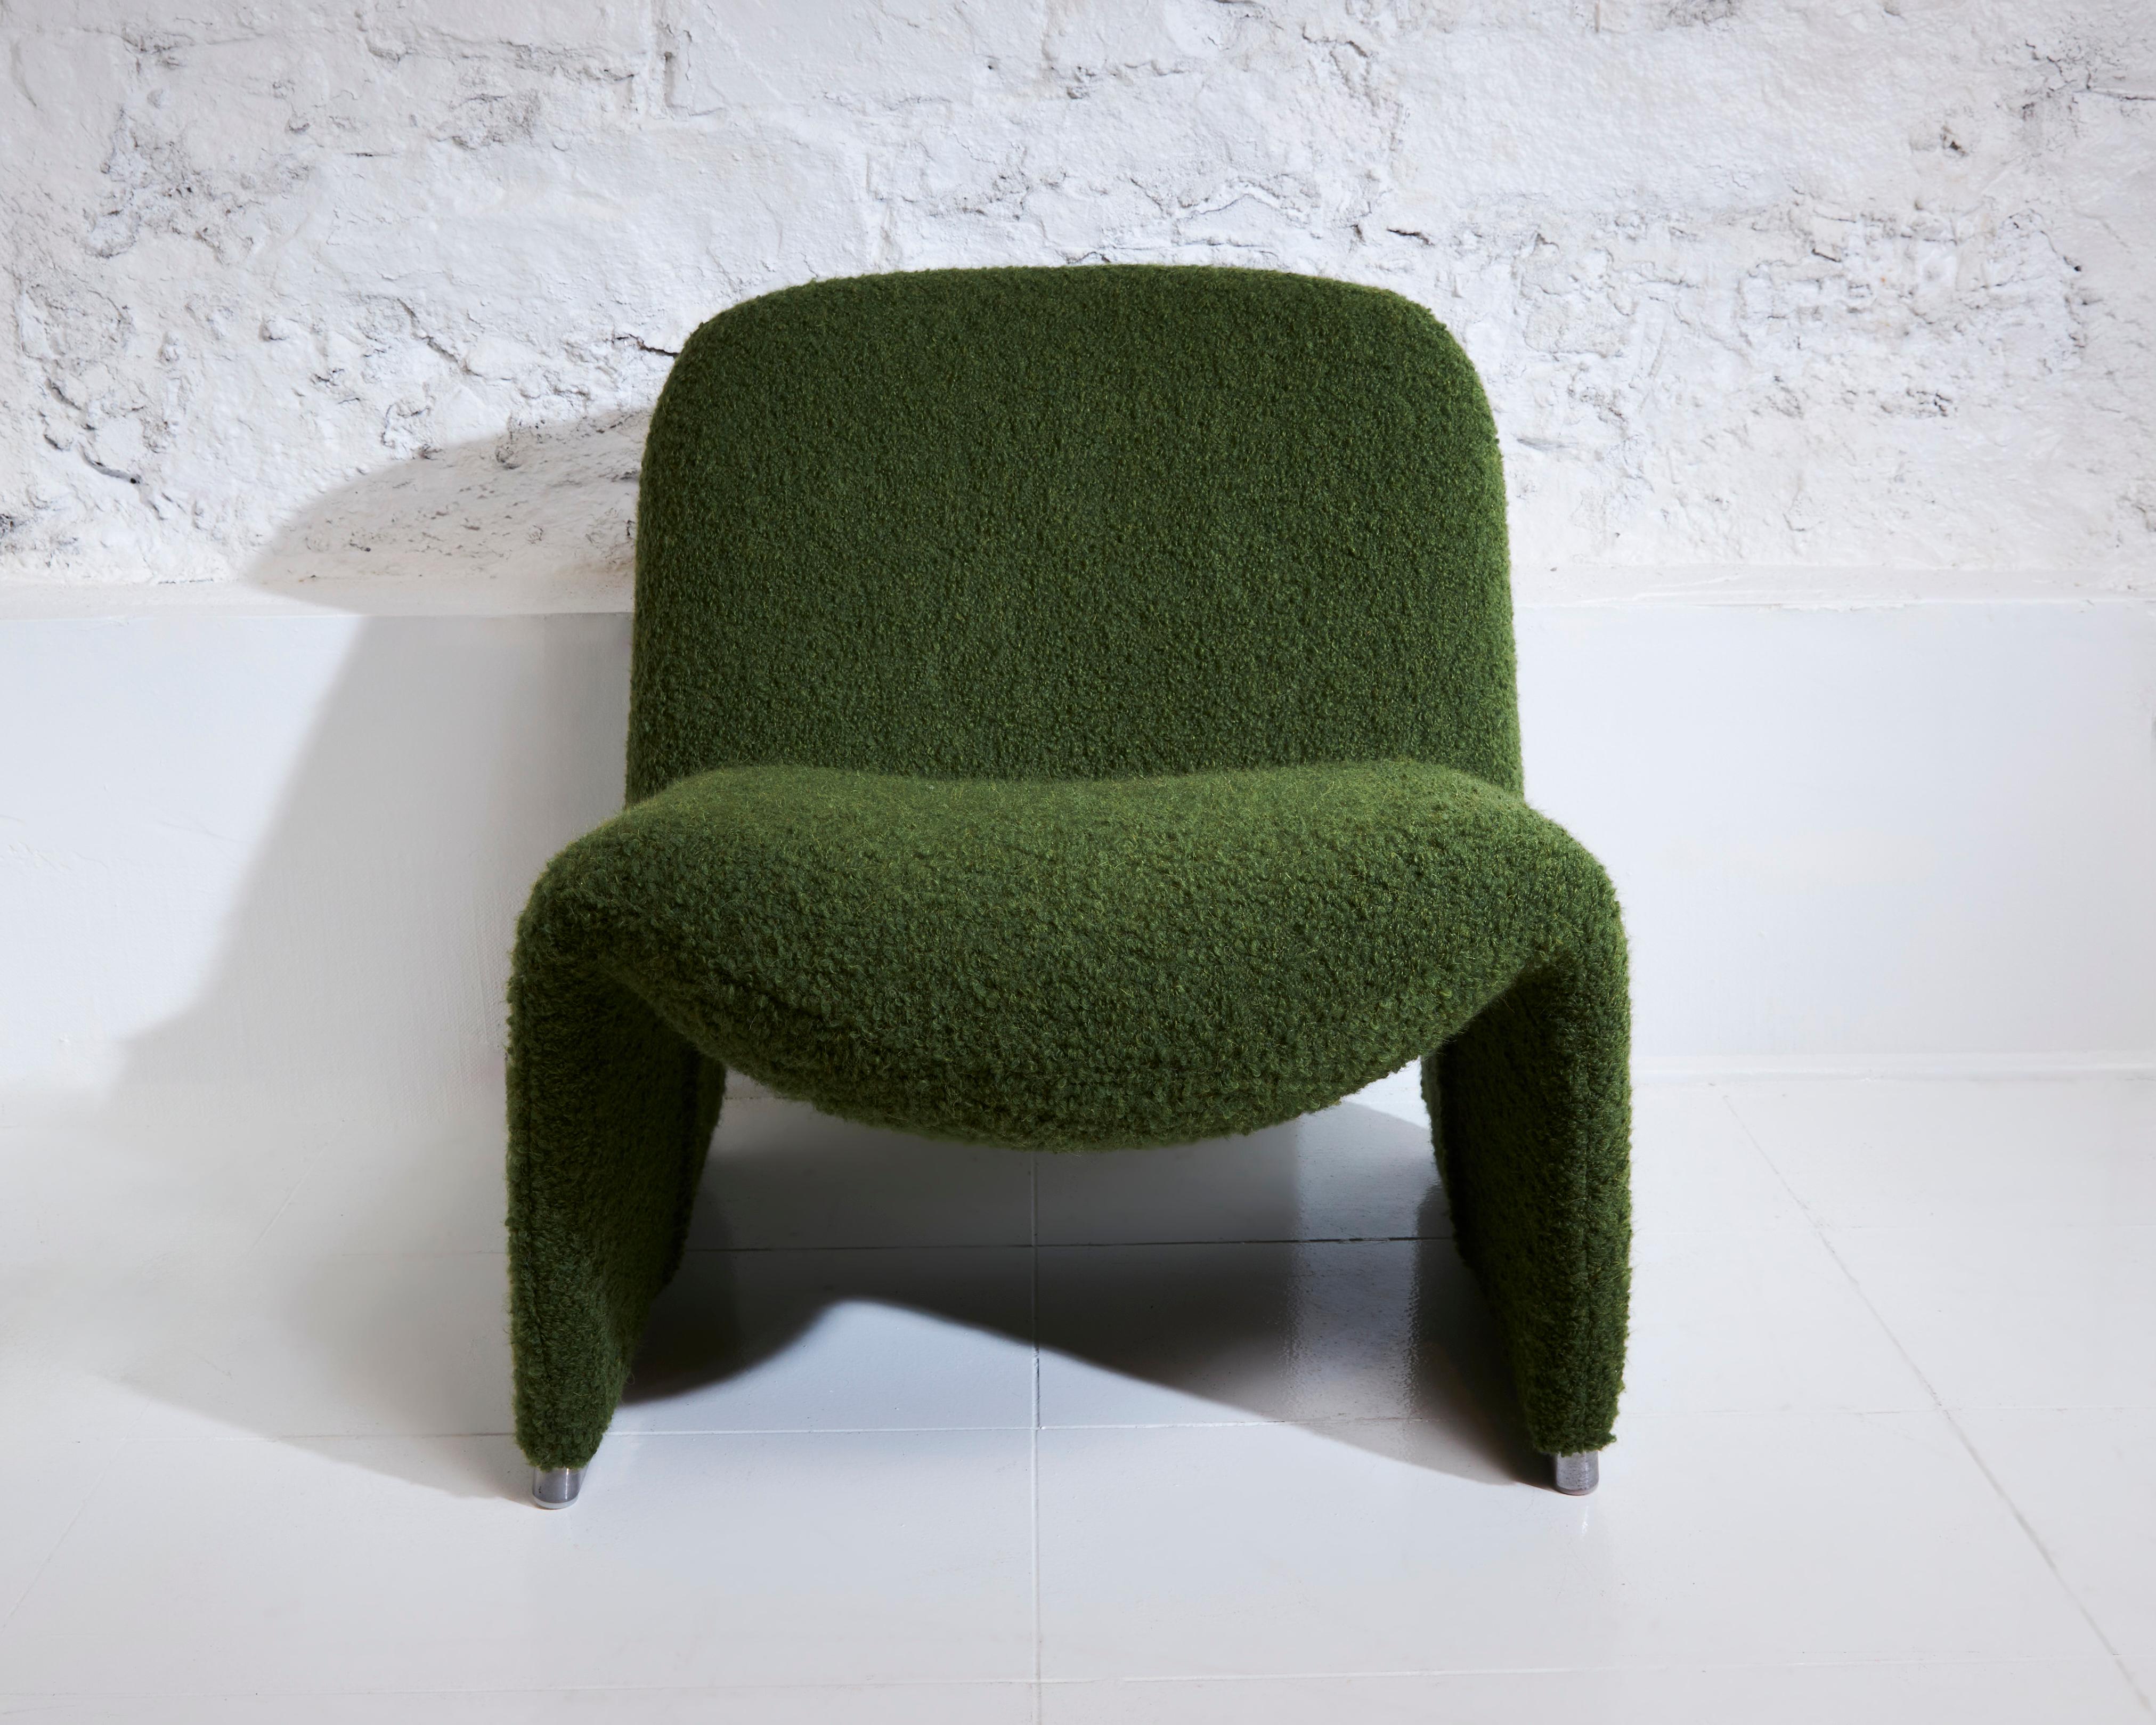 Le fauteuil Alky, créé par Giancarlo Piretti à la fin des années 1960, continue de séduire par son design distinctif de chaise longue, qui reste encore aujourd'hui inégalé. Ce fauteuil multifonctionnel allie harmonieusement confort, design et